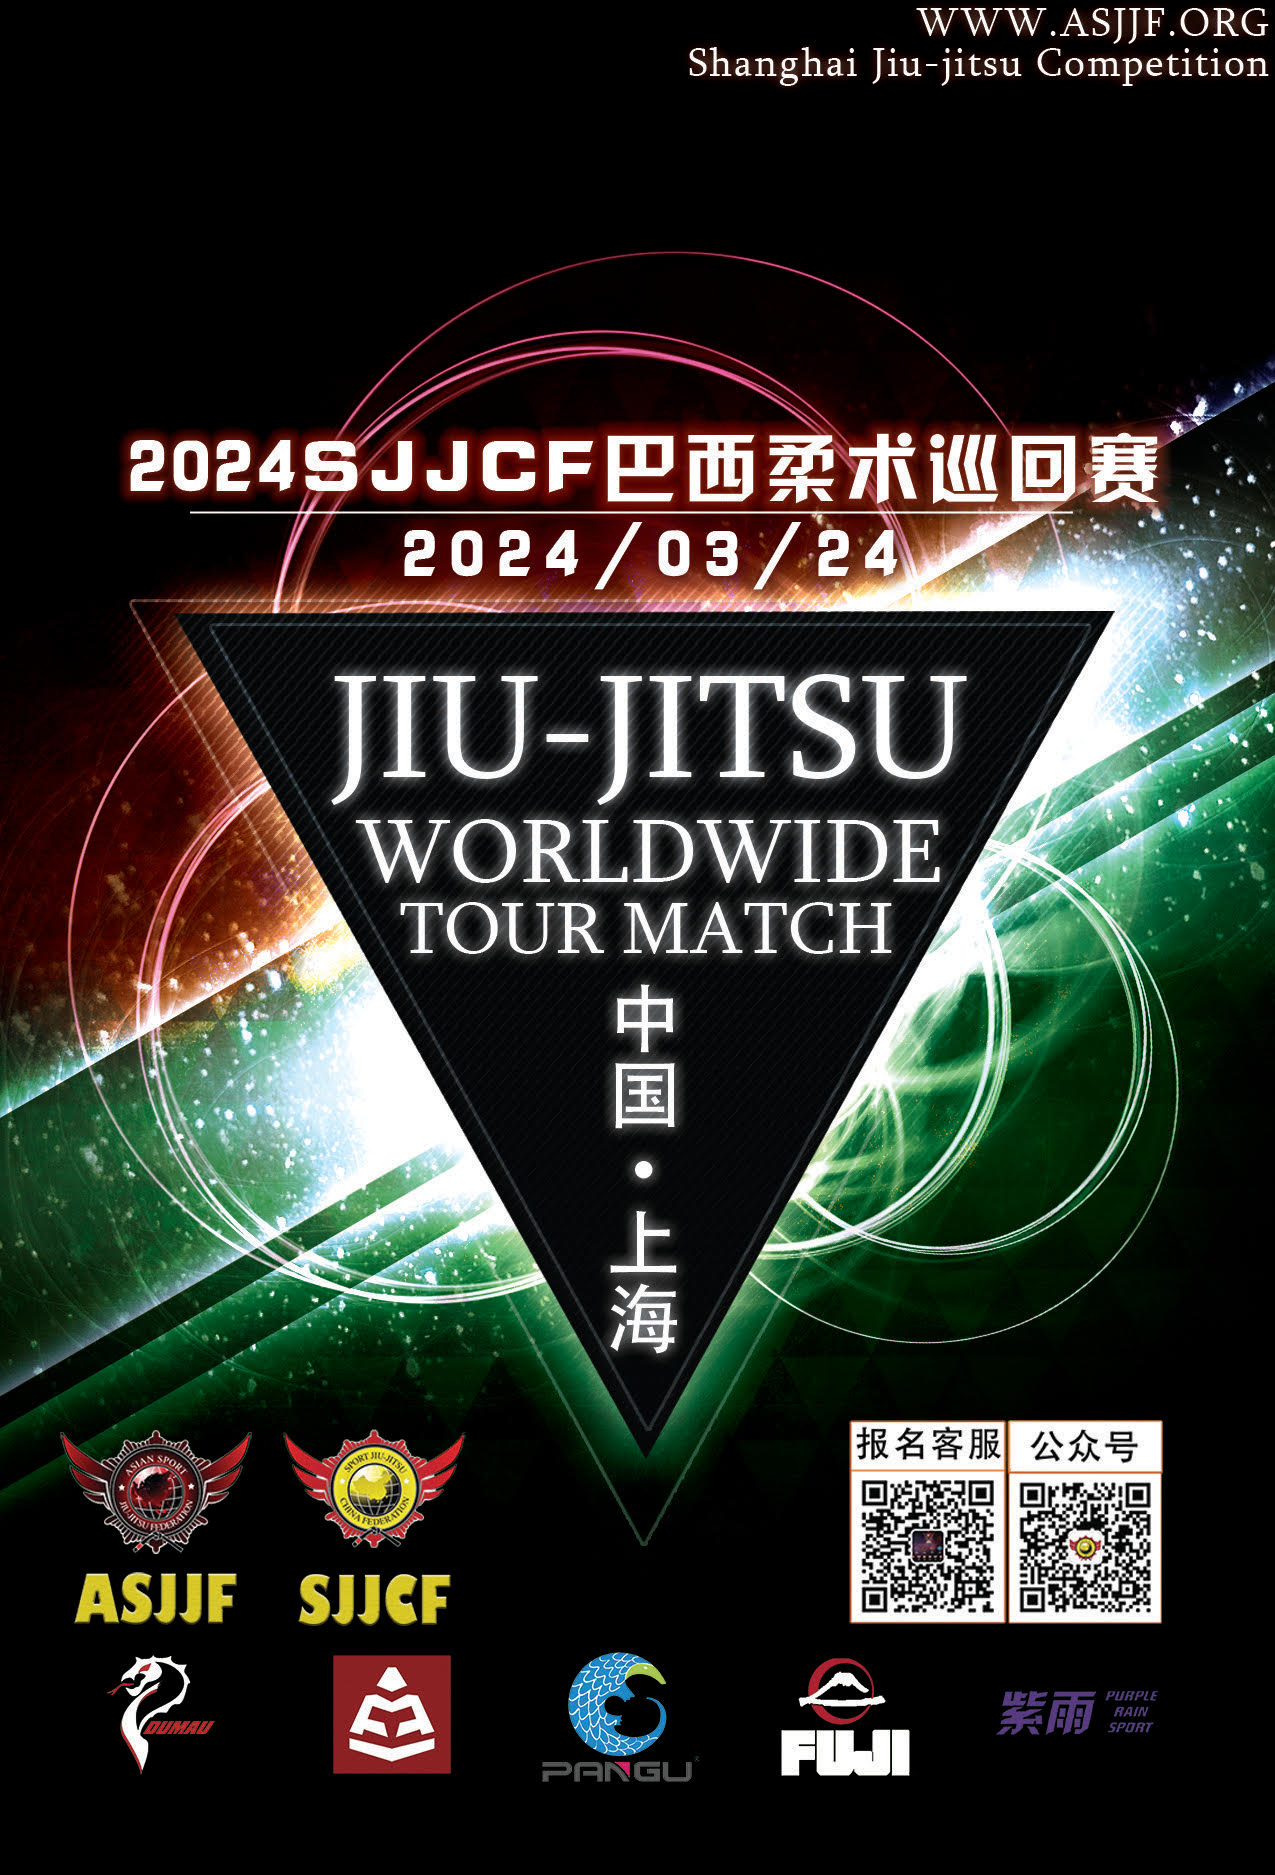 sjjcf shanghai jiu jitsu championship 2024  (GI Event)